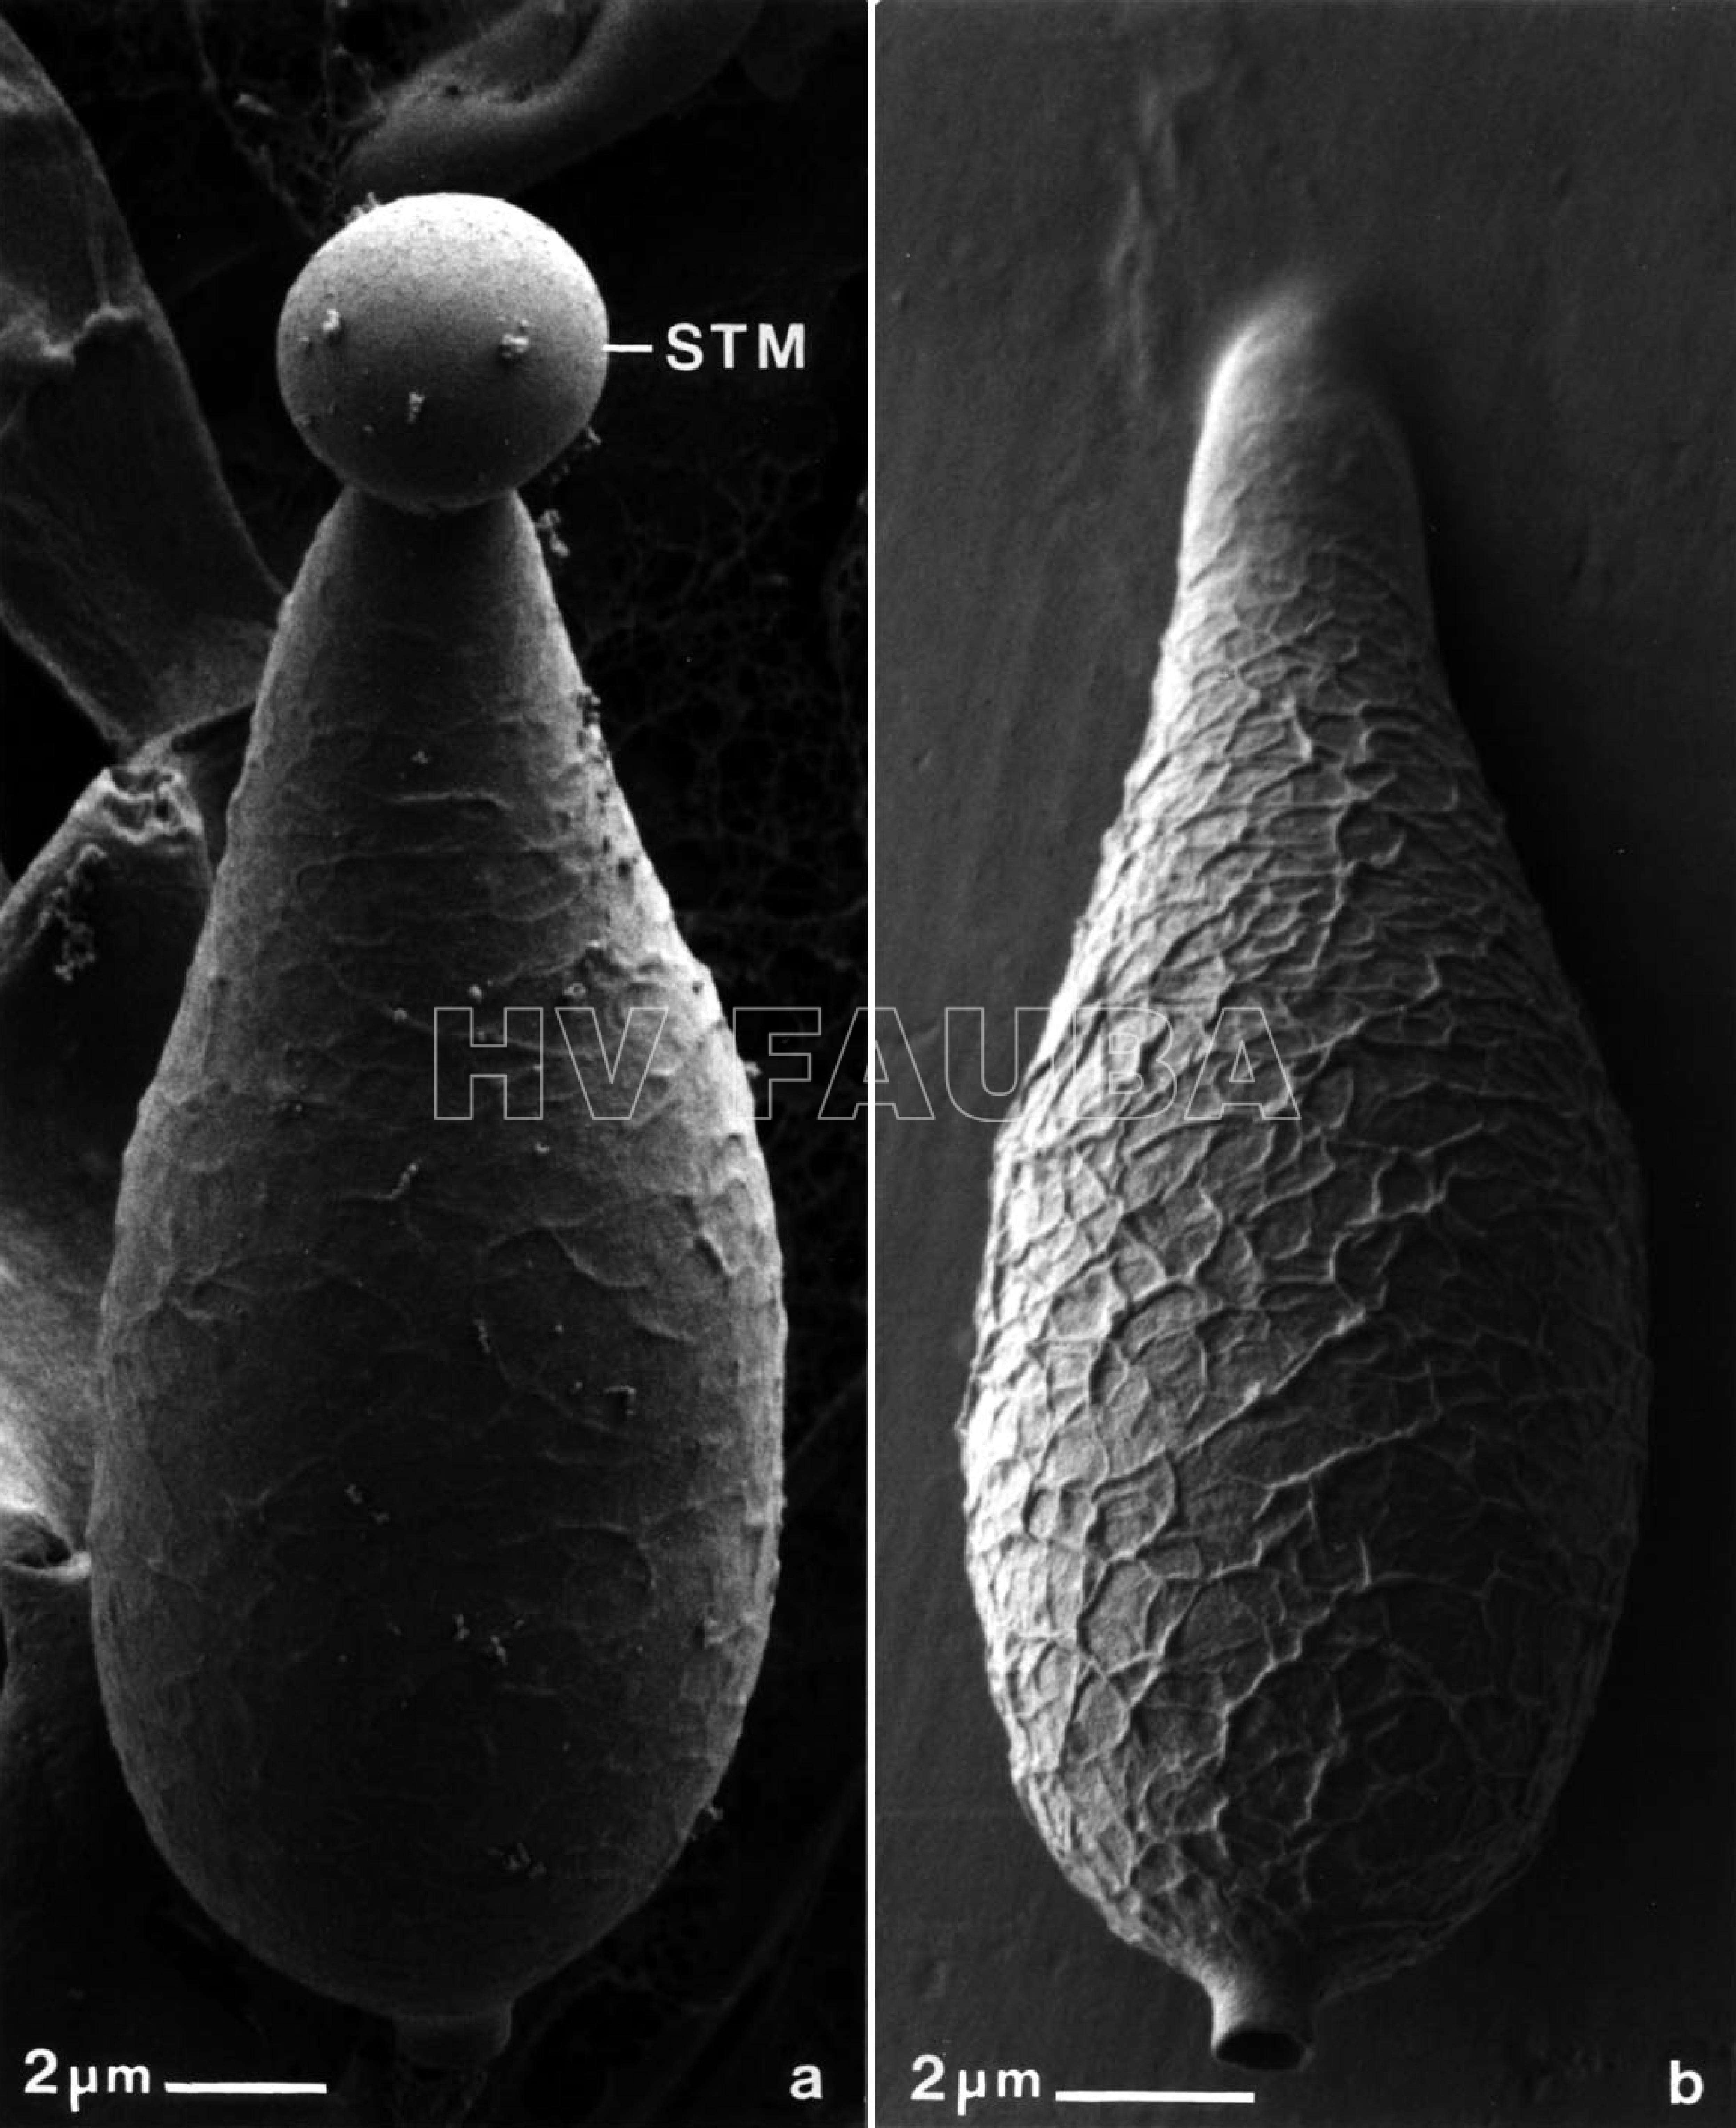 Micrografías electrónicas de barrido criogénico de conidios de M. grisea. (a) Conidio soportado en el conidióforo, que exhibe una gota apical de mucílago adhesivo en la punta de la espora (STM). (b) La fijación de conidio por medio de STM resultó de tocar la superficie del cubreobjetos de plástico a la colonia esporulante. Nótese la ornamentación reticulada única en la superficie de los conidios. Autor: Howard y Valent, 1996.